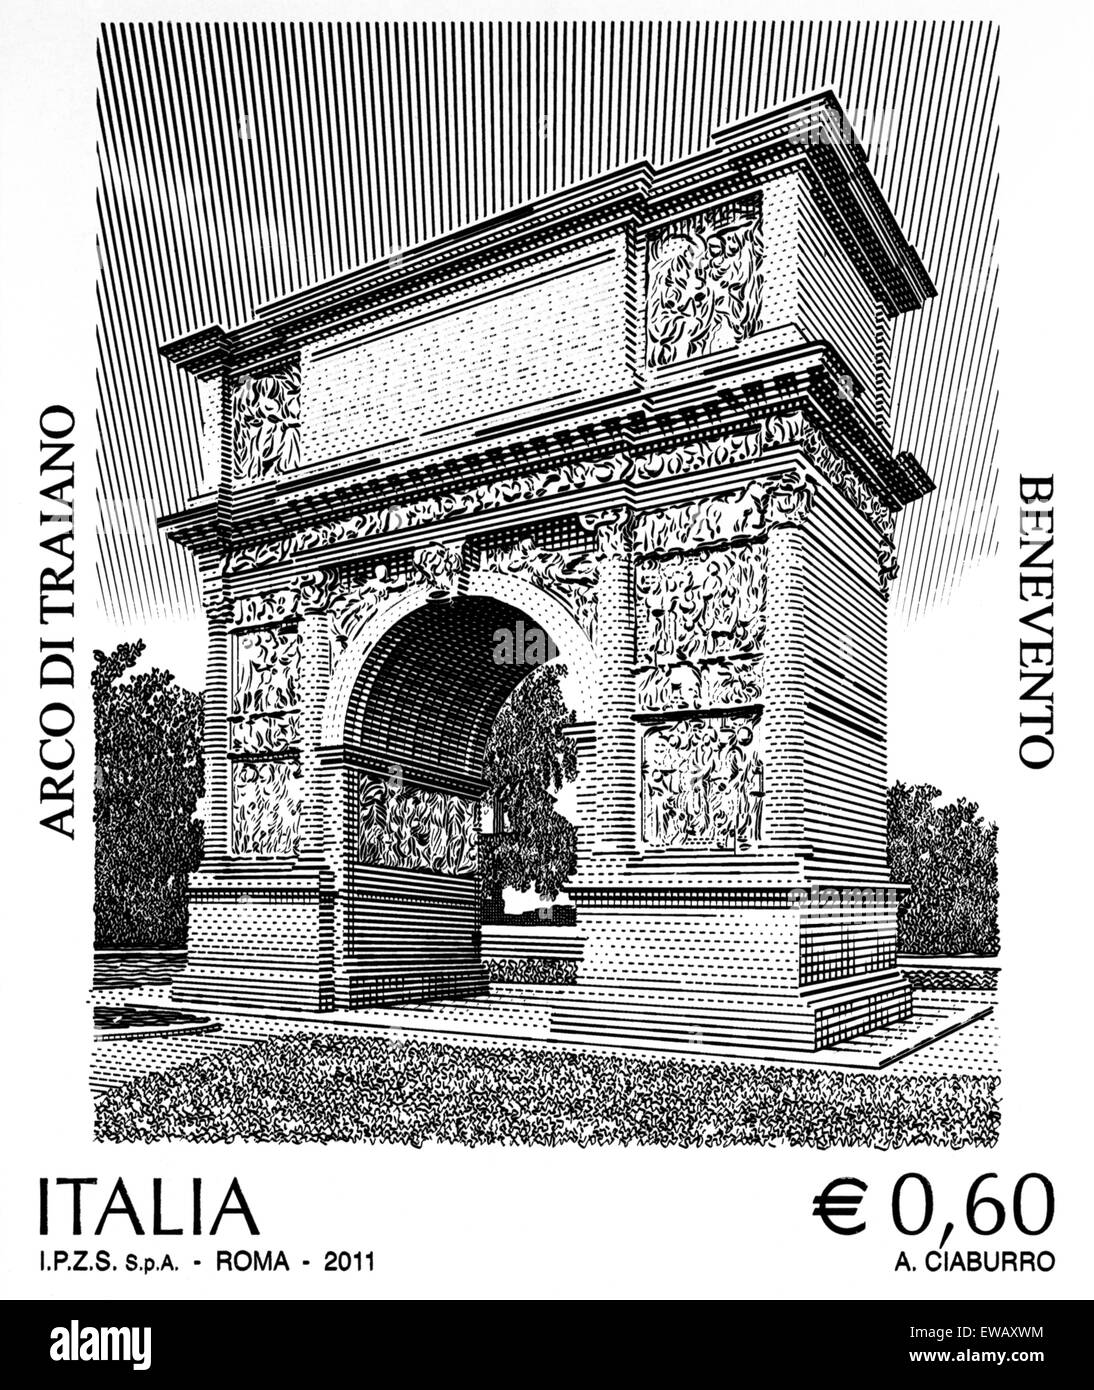 Benvento.The Arch of Trajan (Italian: Arco di Traiano). Stock Photo